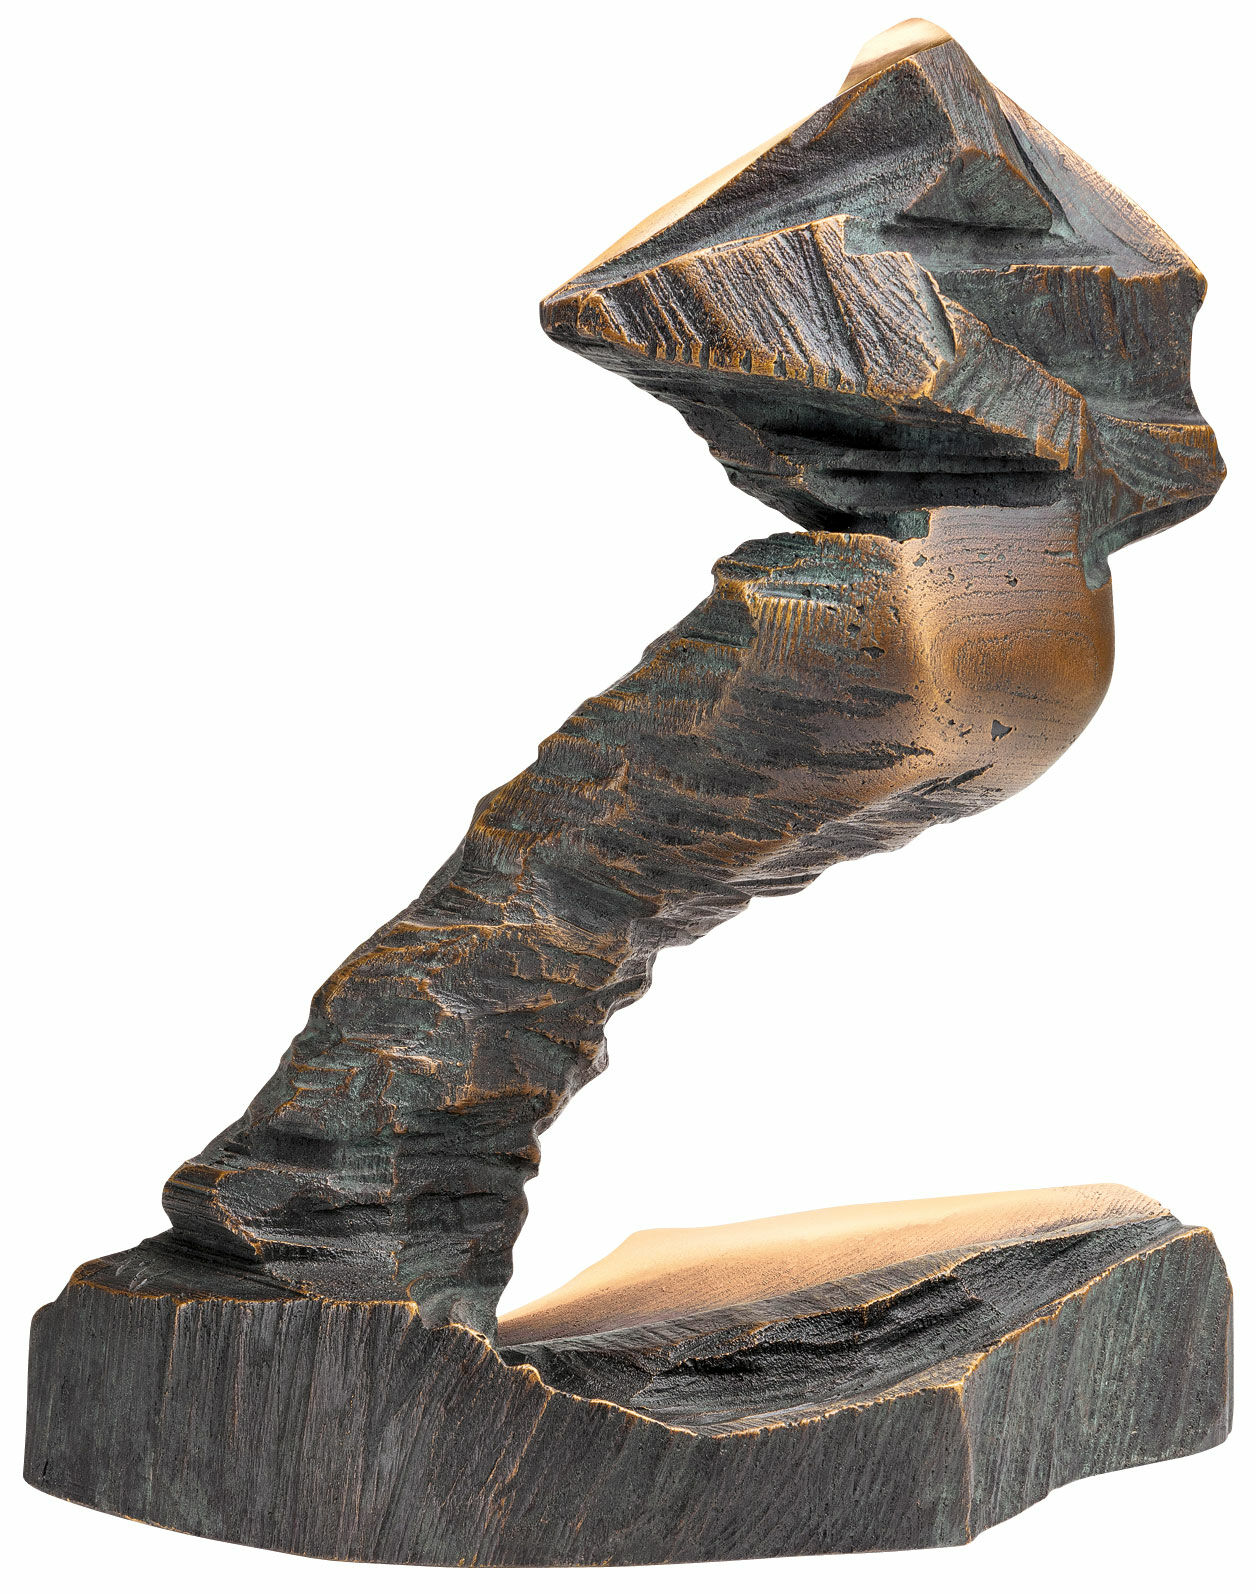 Sculpture "Super-G", bronze von Michael Vogler